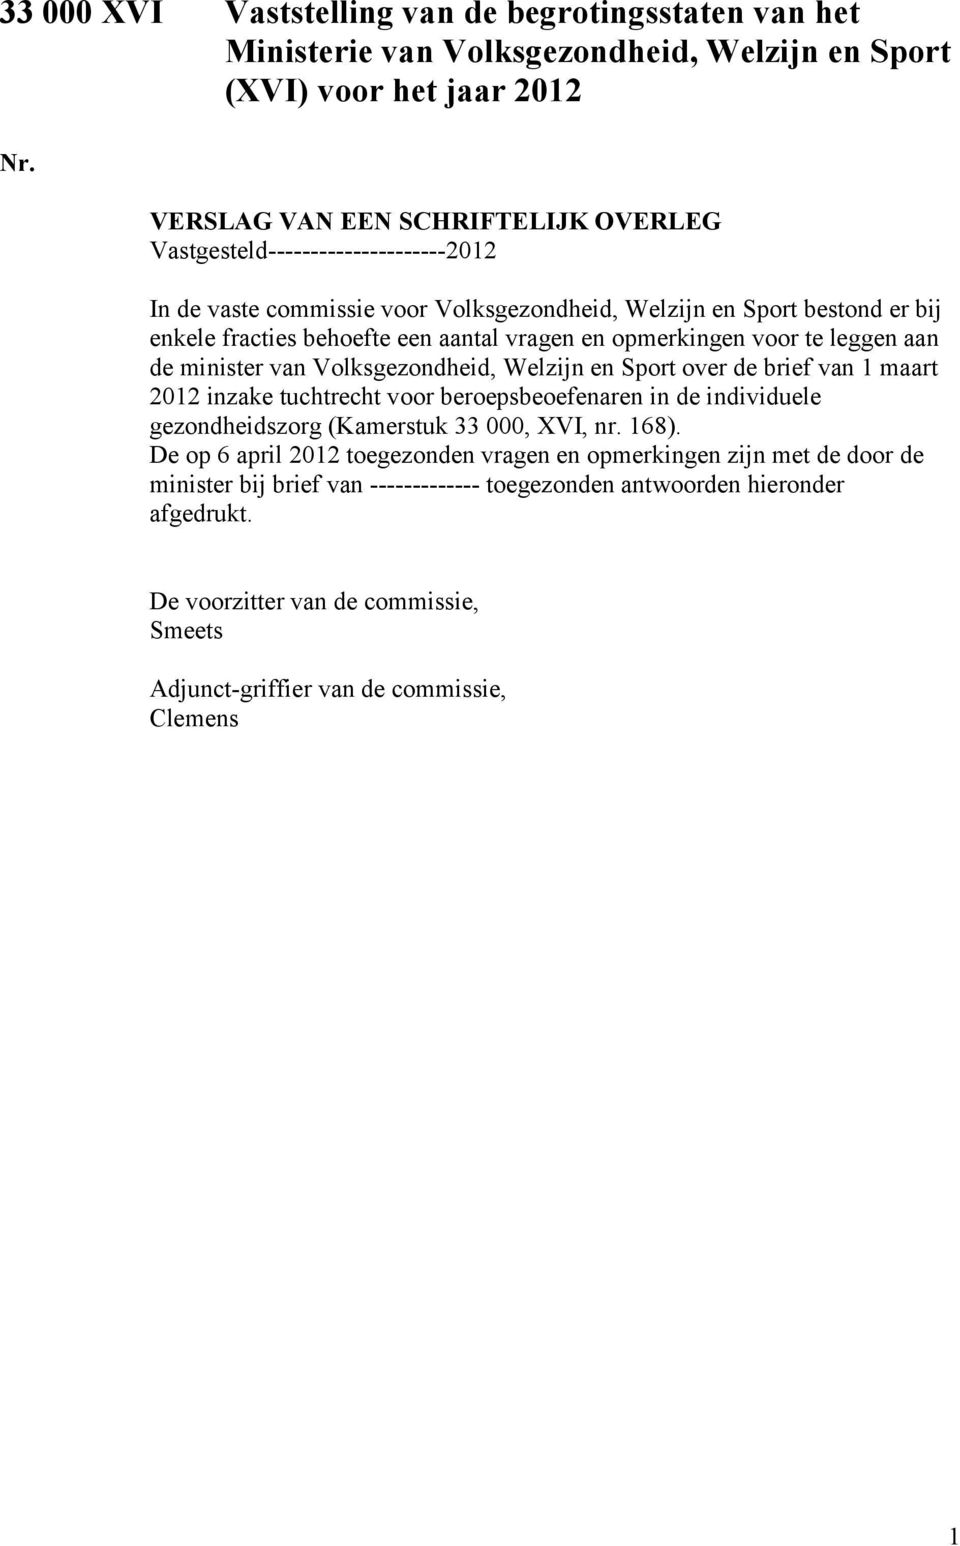 opmerkingen voor te leggen aan de minister van Volksgezondheid, Welzijn en Sport over de brief van 1 maart 2012 inzake tuchtrecht voor beroepsbeoefenaren in de individuele gezondheidszorg